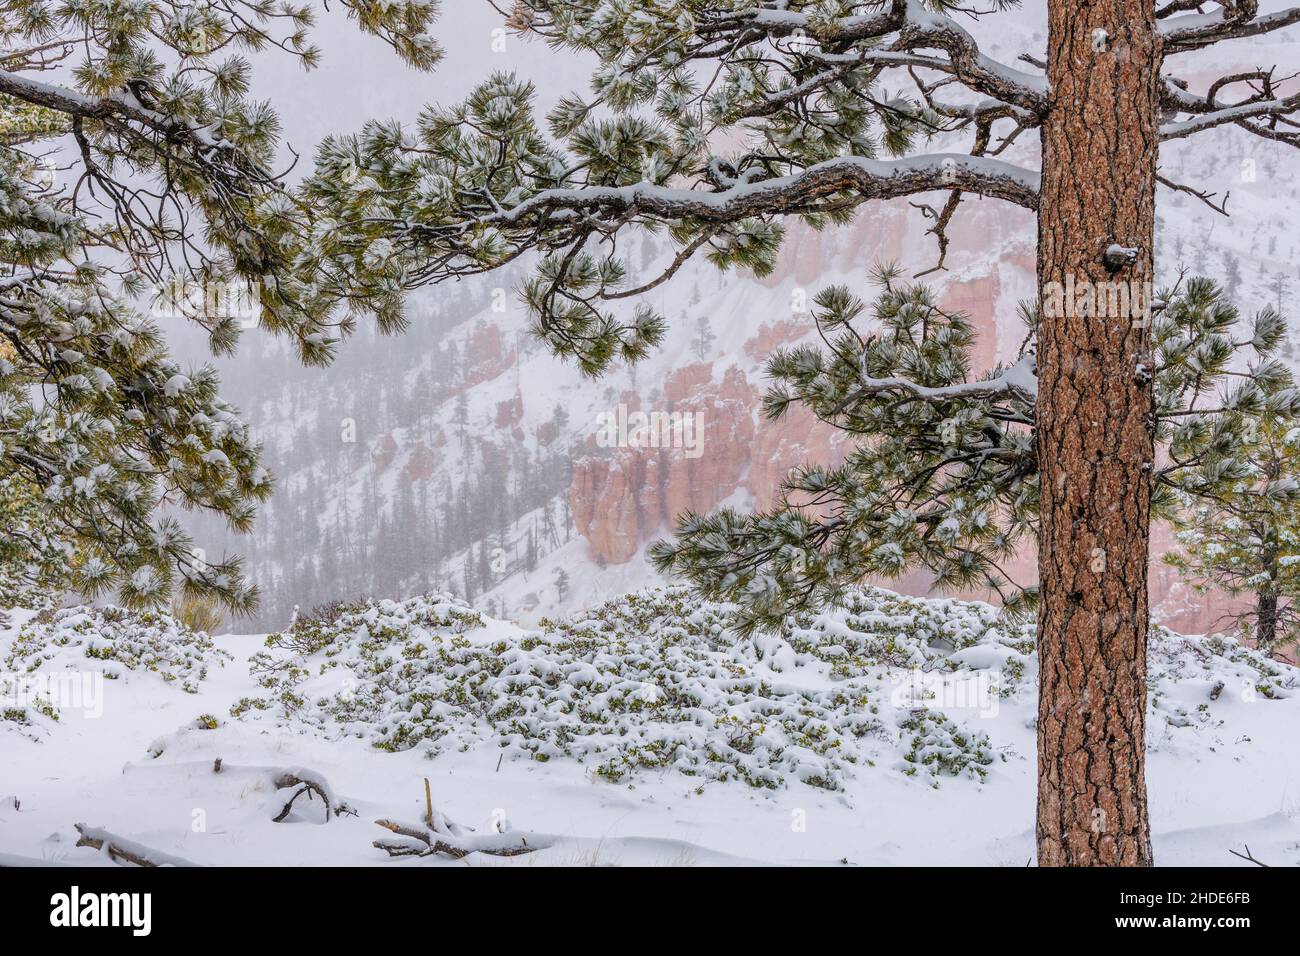 Immagine catturata durante una tempesta di neve nello Utah meridionale. Neve che cade e copre gli alberi nella neve. Foto Stock